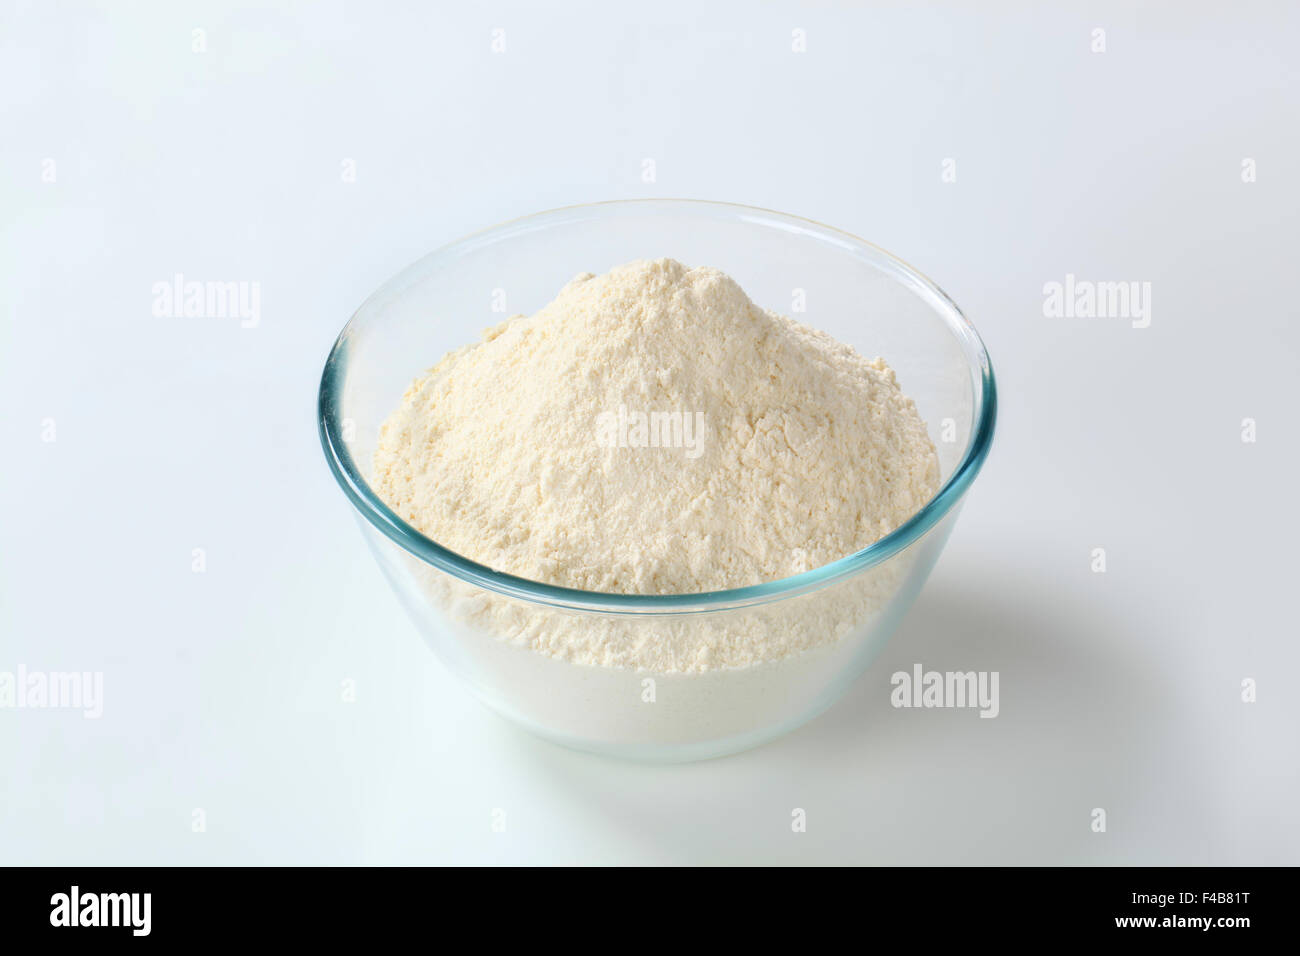 La harina de trigo blanco en un pequeño tazón de vidrio. Foto de stock